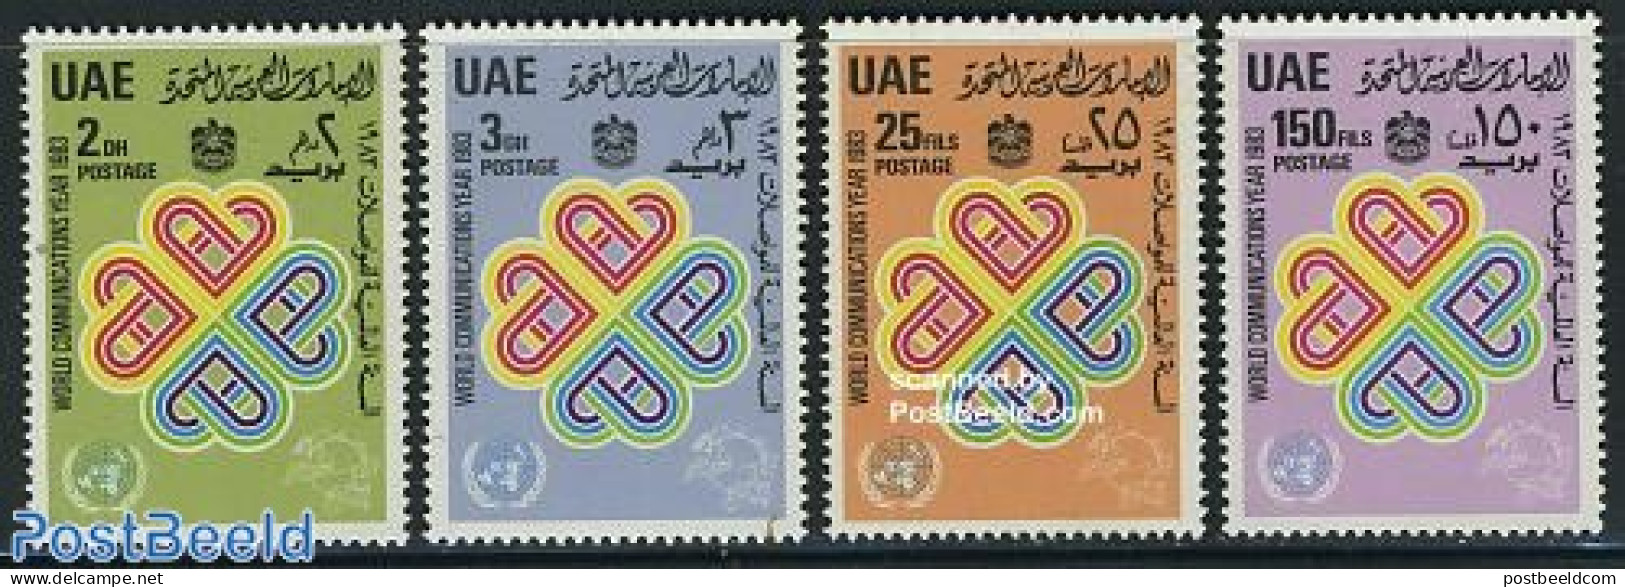 United Arab Emirates 1983 World Communication Year 4v, Mint NH, Science - Int. Communication Year 1983 - Telecommunica.. - Télécom